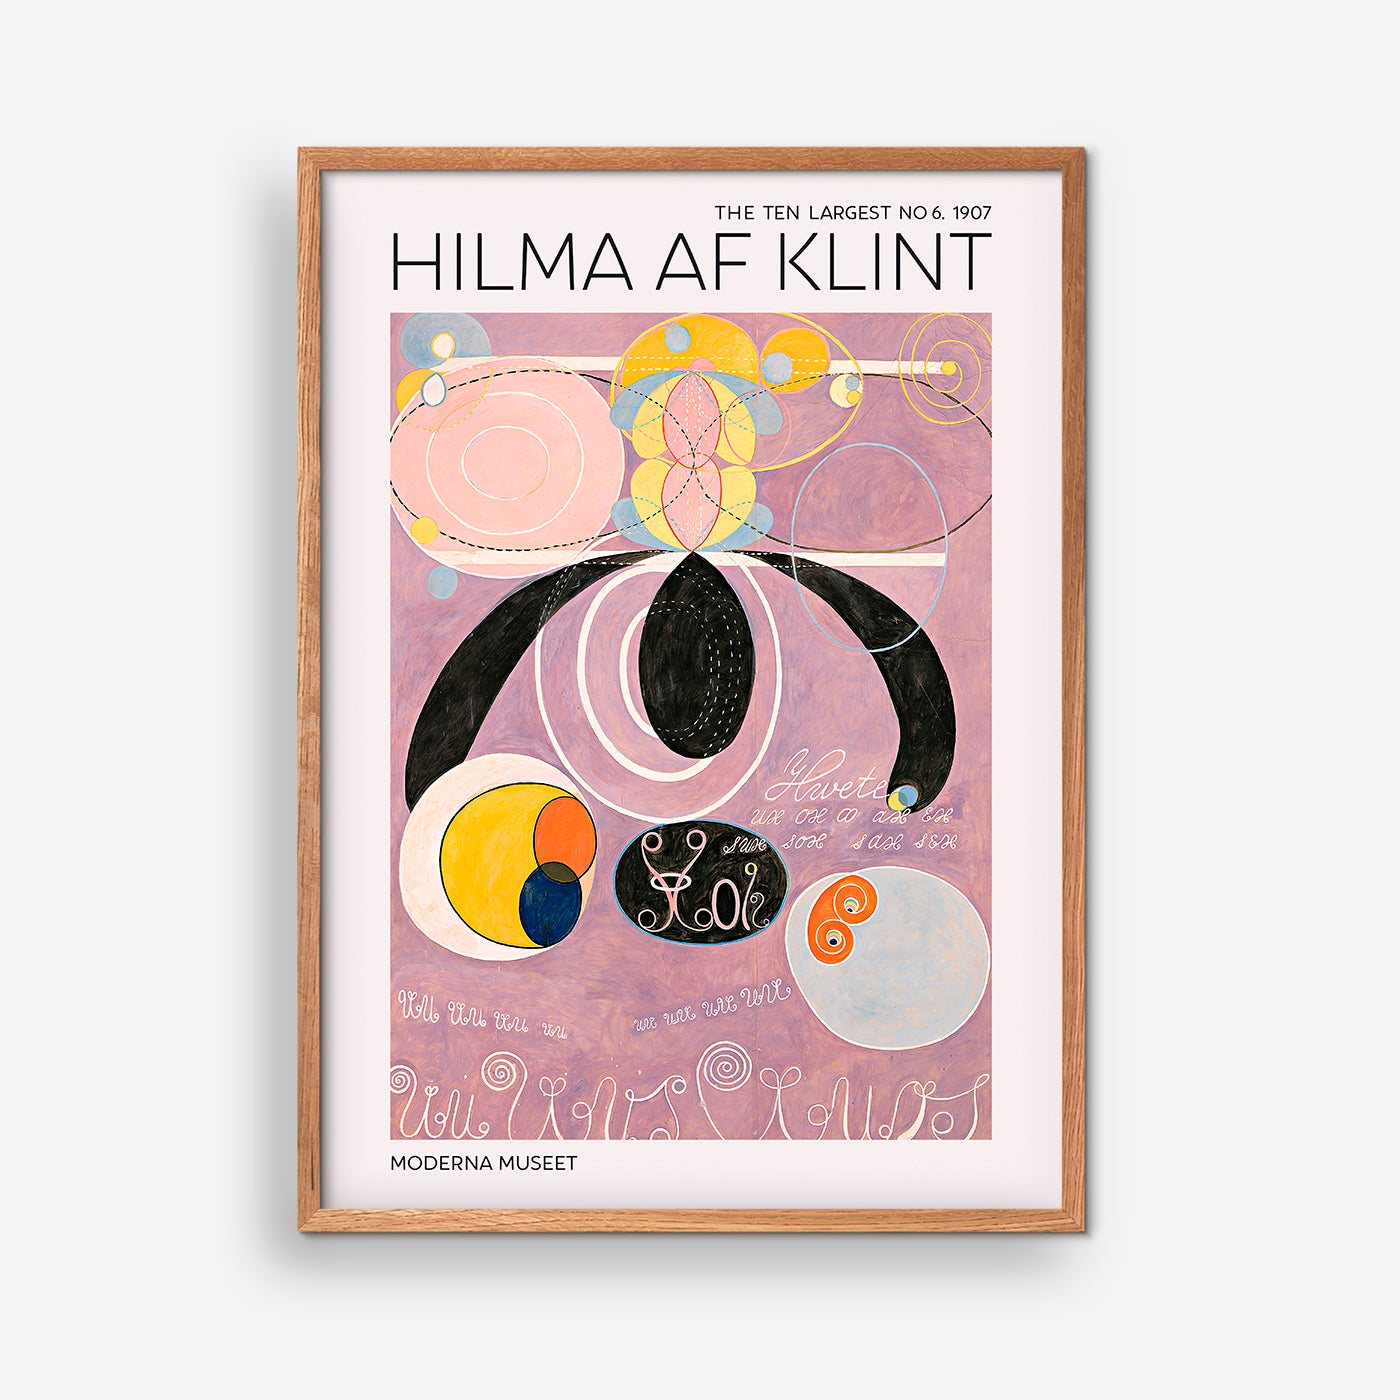 The Ten Largest No. 6 - Hilma Af Klint